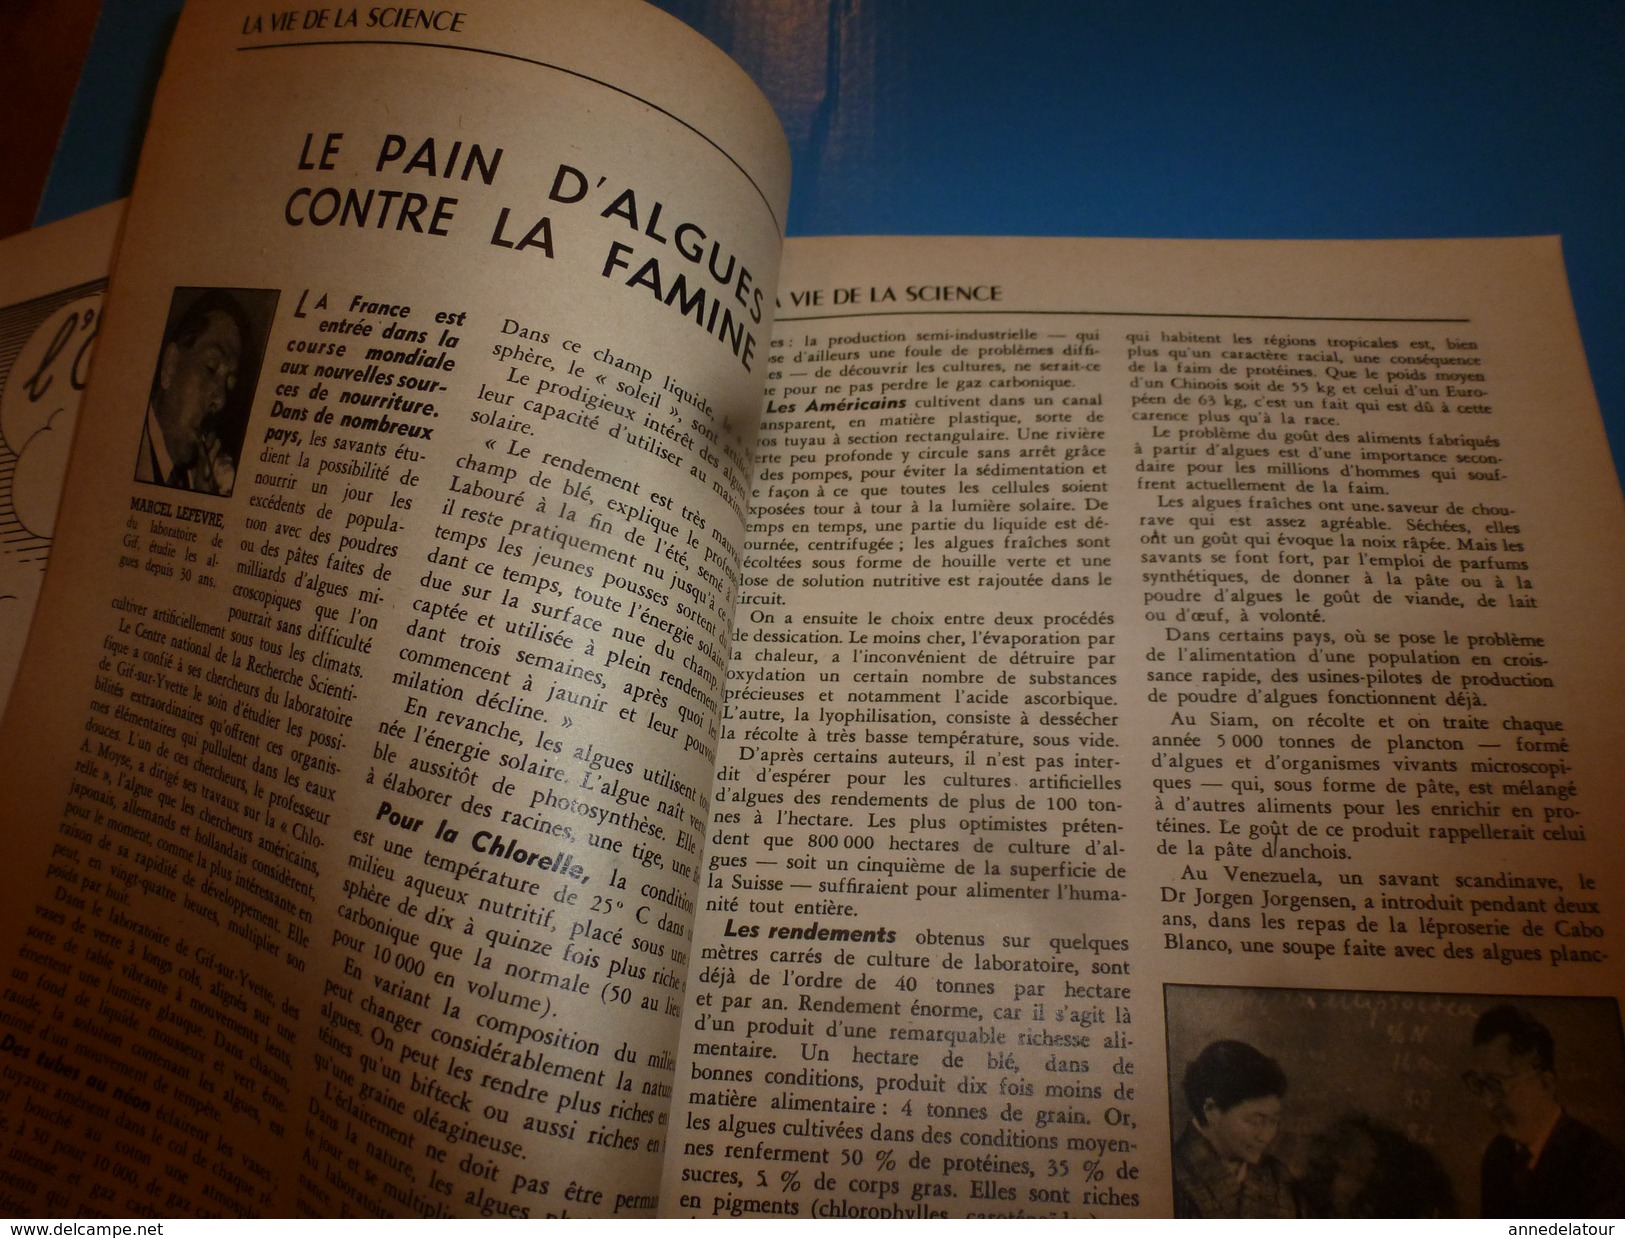 1955 SCIENCE Et VIE  --->PARENTIS La Grande Aventure Du Pétrole Français; Des Lunettes Pour Sourds; Au Pole-Sud;etc - Scienze